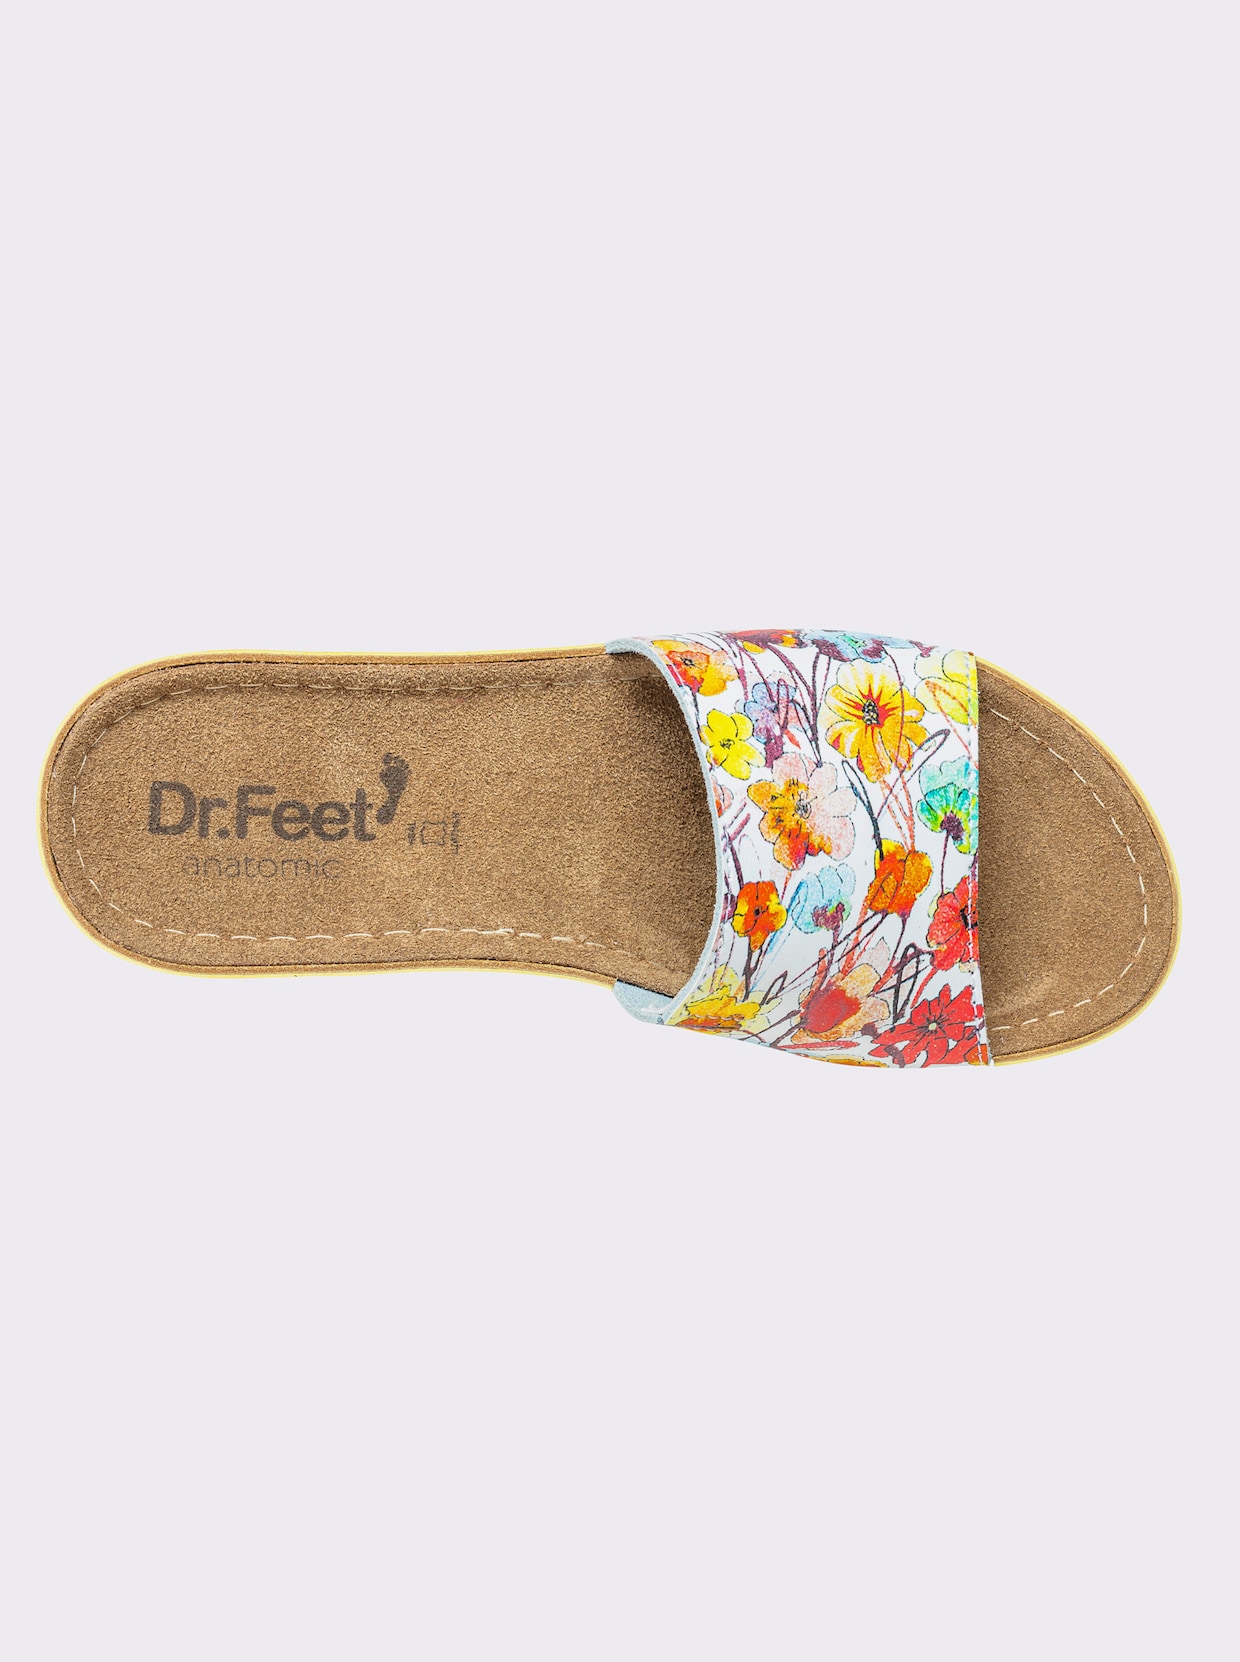 Dr. Feet Hausschuh - gelb